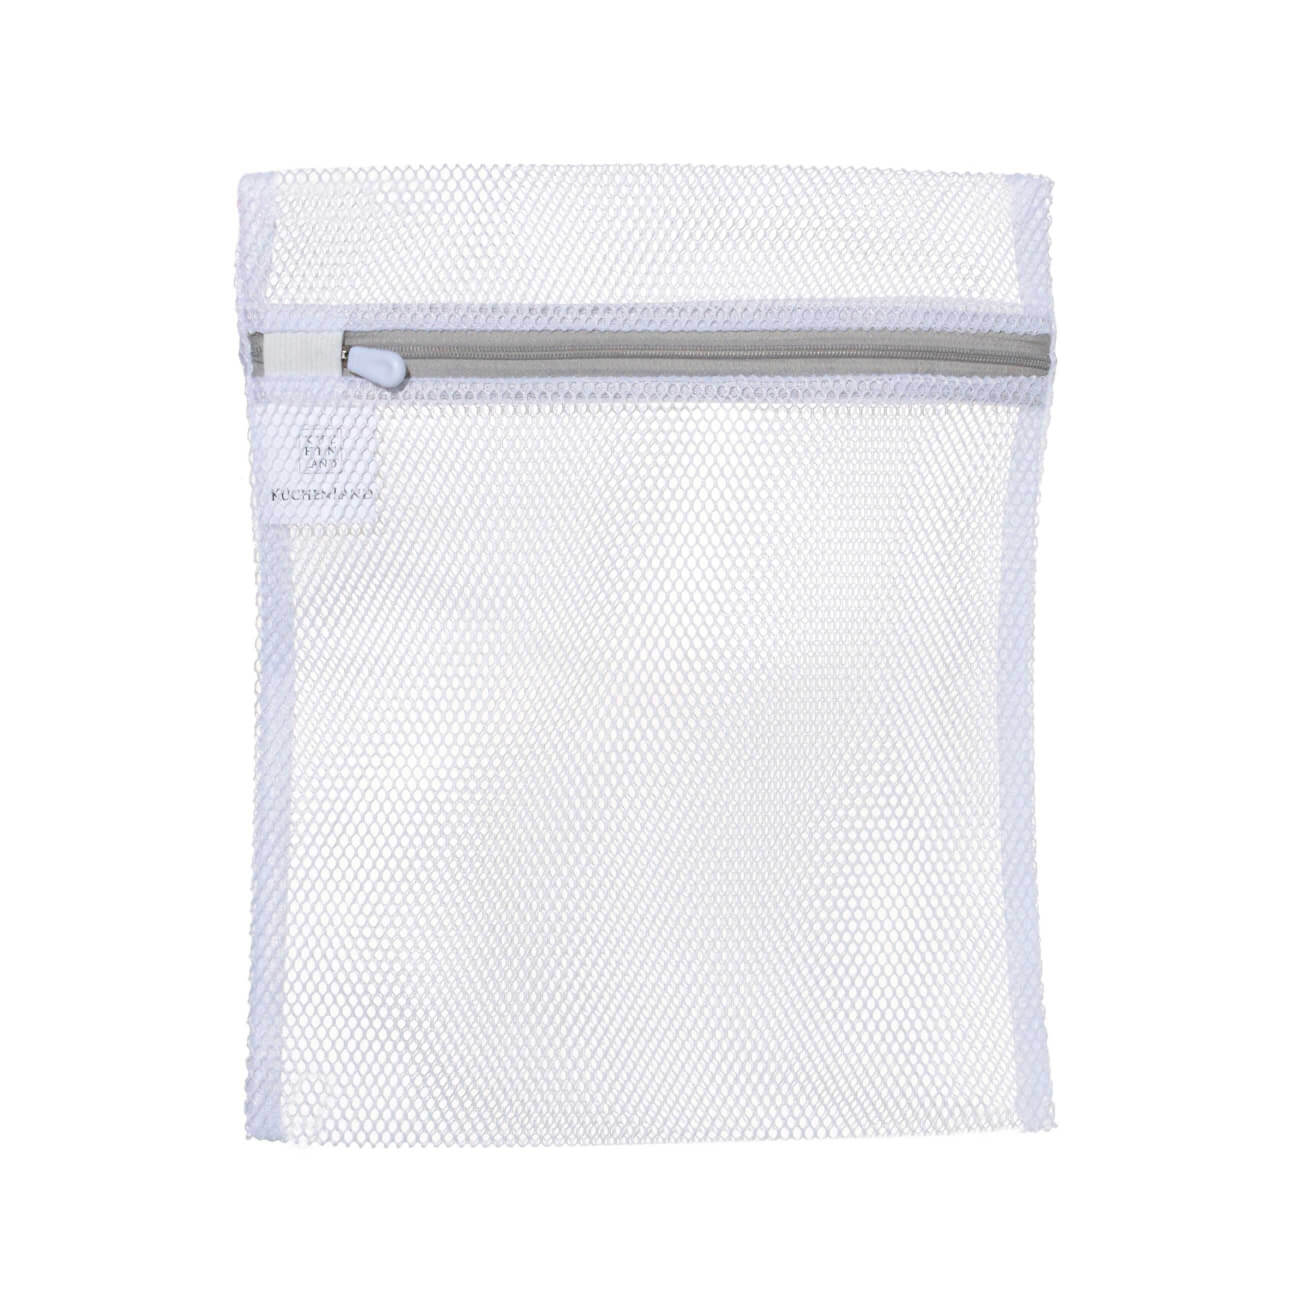 Мешок для стирки нижнего белья, 25х30 см, полиэстер, бело-серый, Safety мешок для стирки нижнего белья attribute